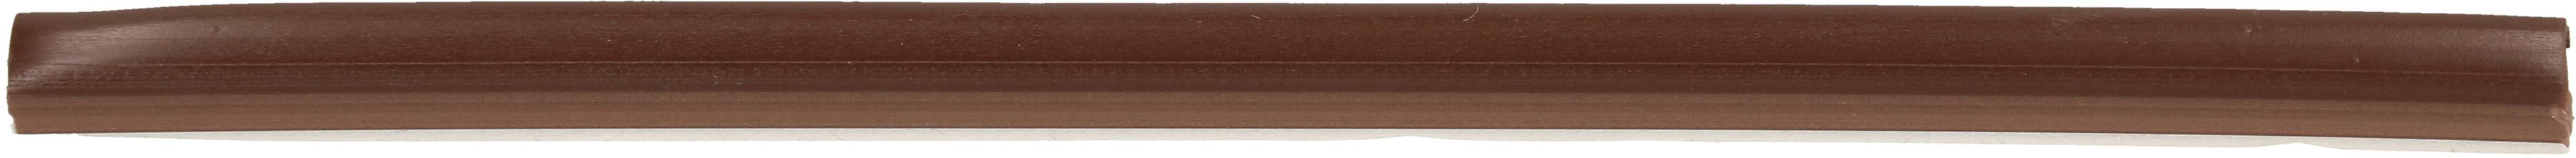 Goulotte 5mm marron auto-adhésif 1m 4 pcs.